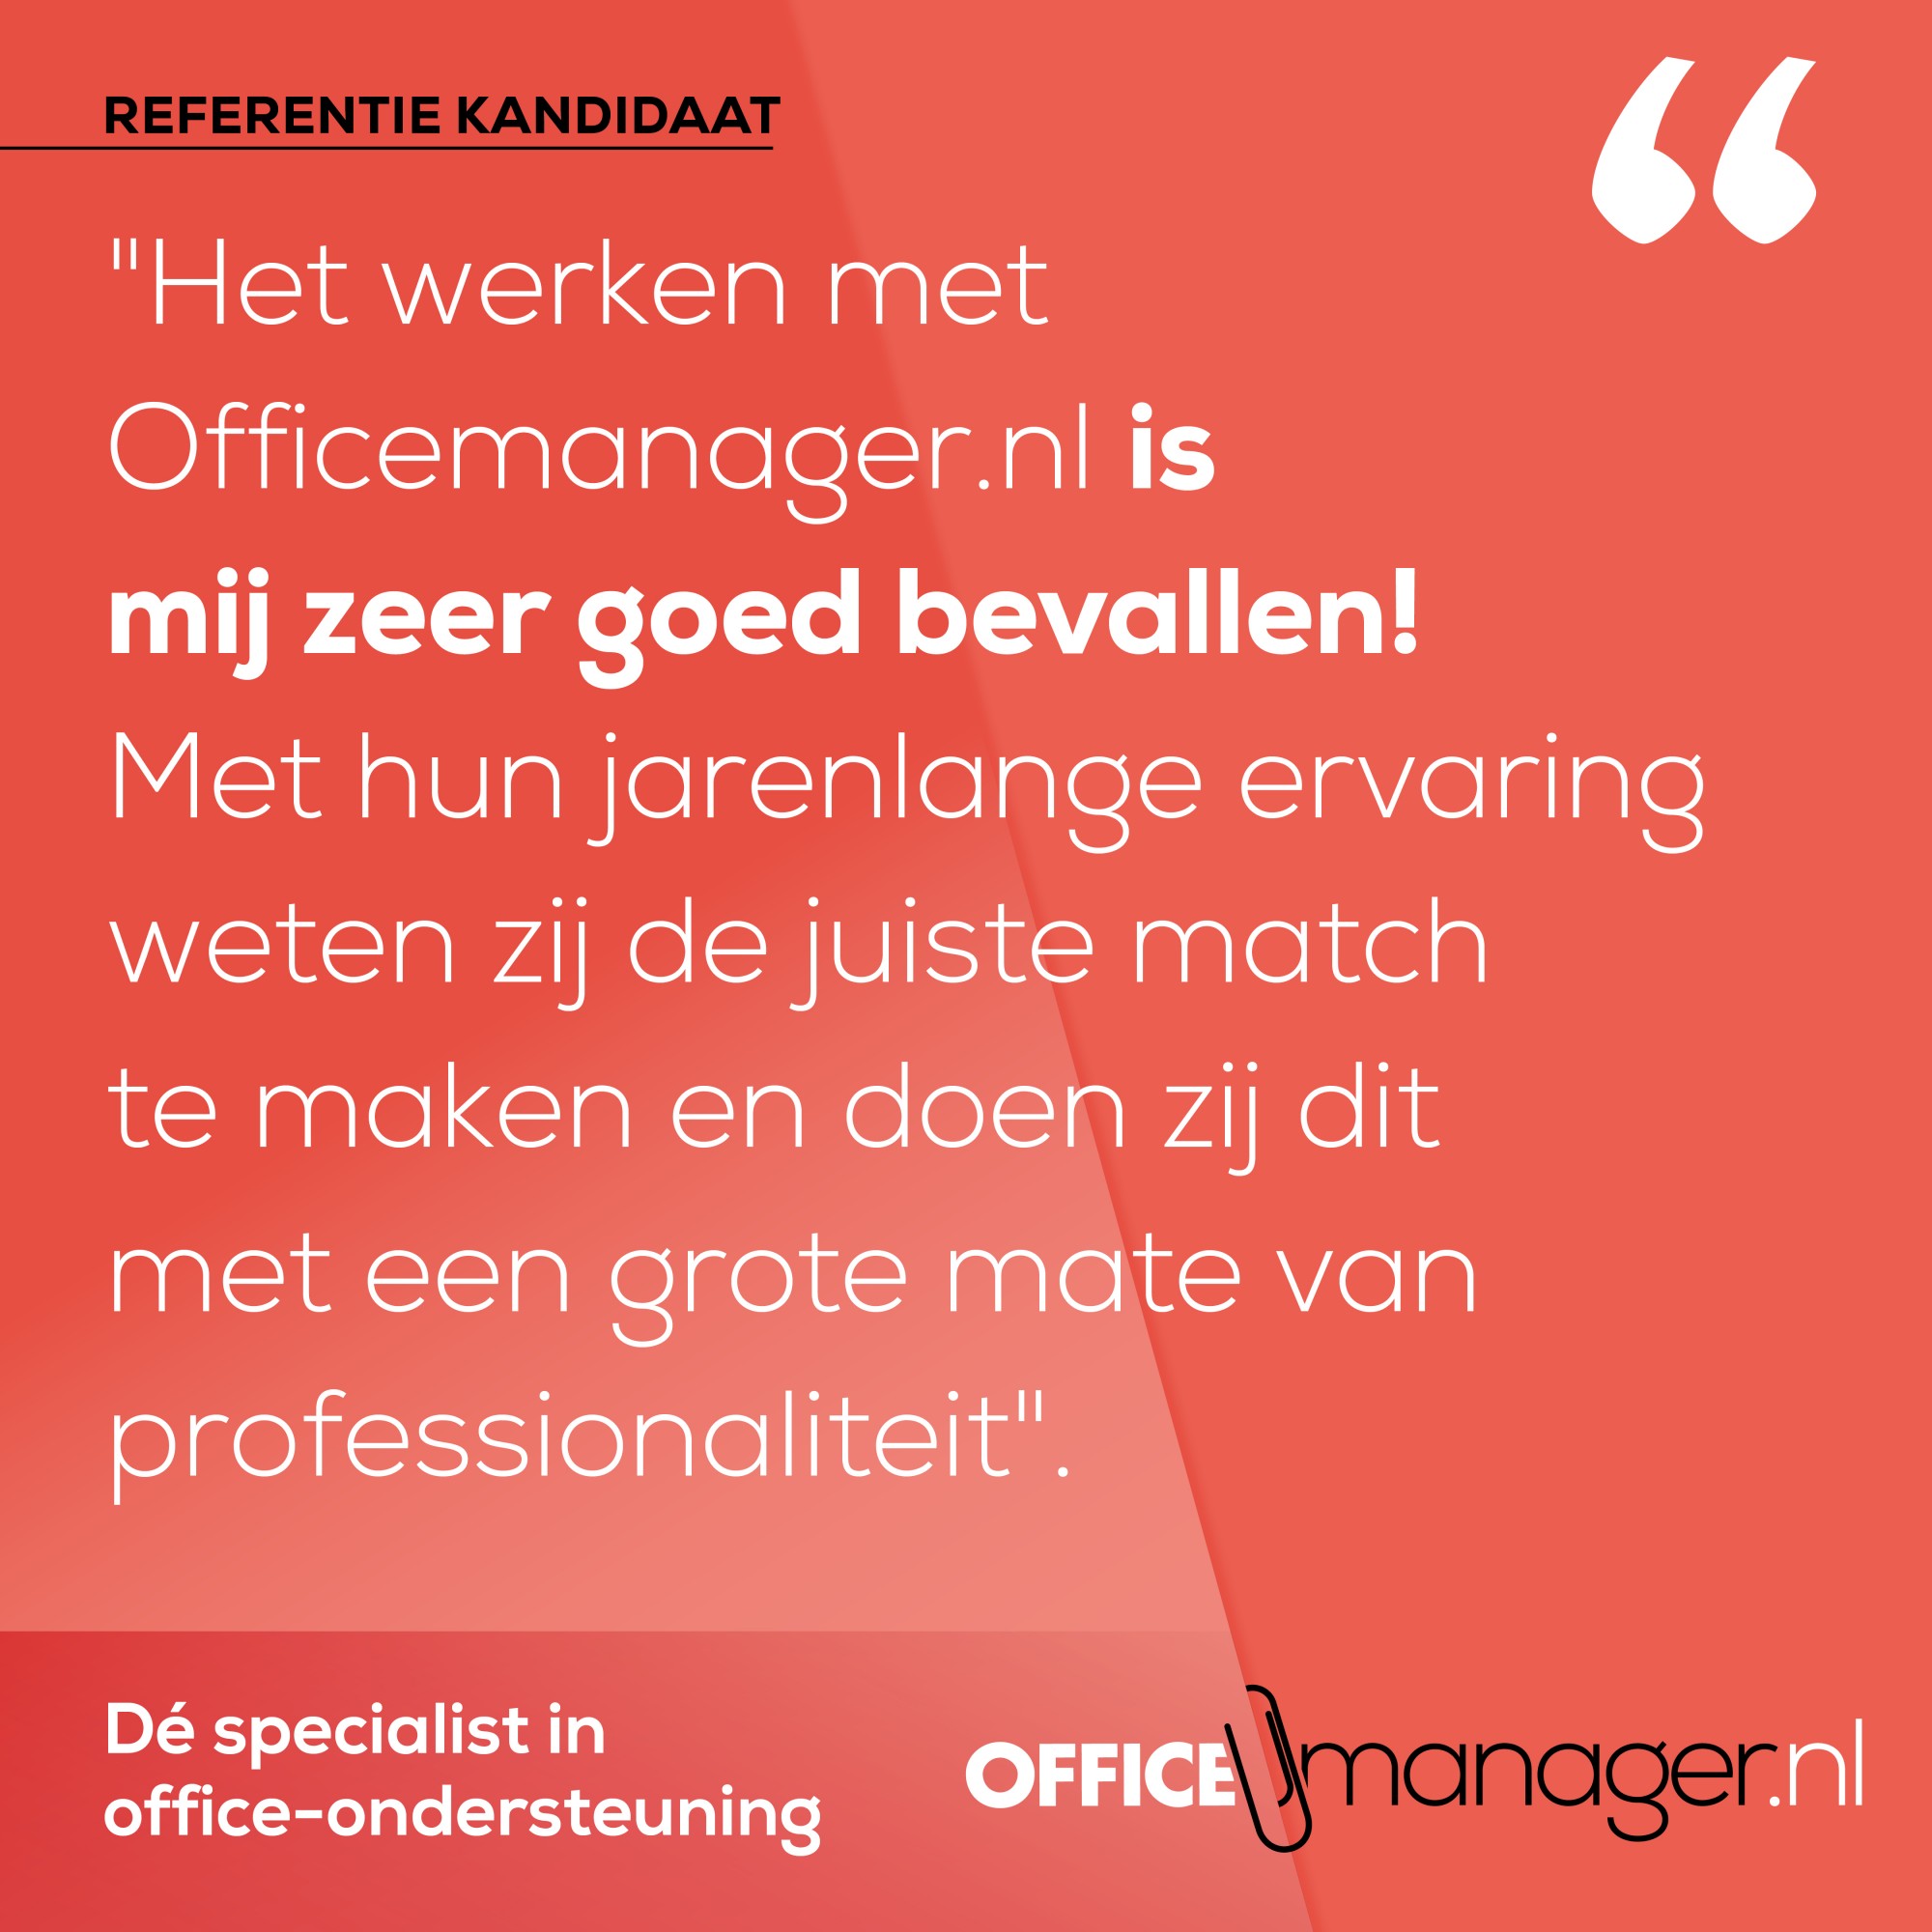 Hier doen we het voor bij Officemanager.nl